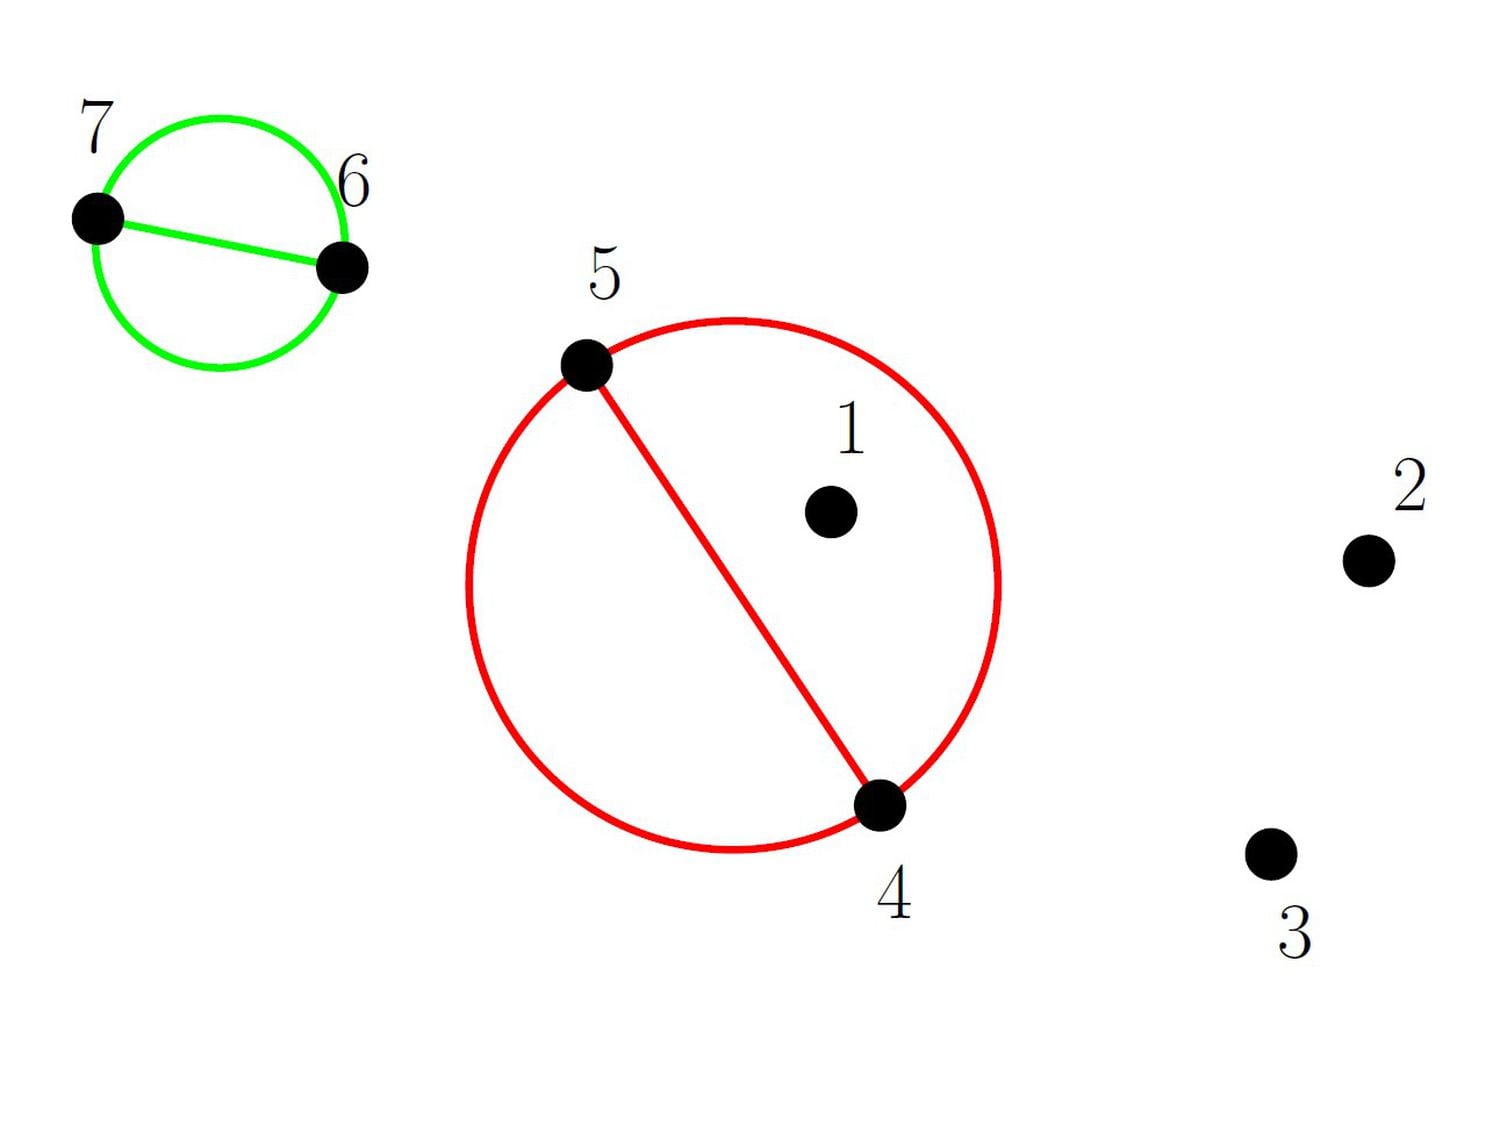 Una unión que sí aparece, en verde, y una unión que no aparece, en rojo.